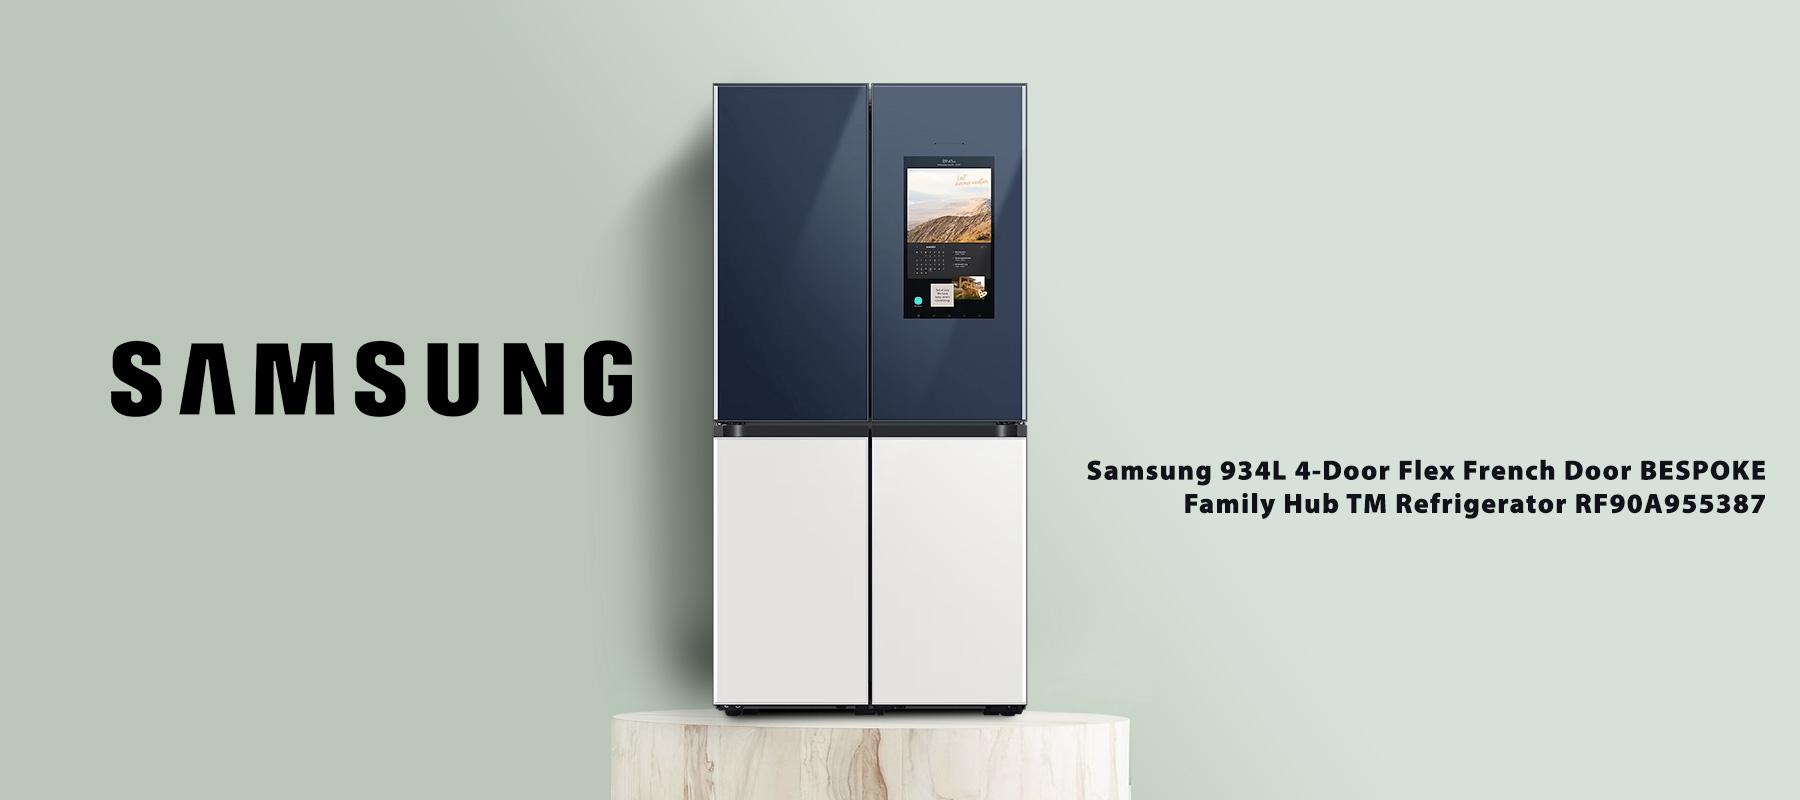 Samsung-934L-4-Door-Flex-French-Door-BESPOKE-Family-Hub-TM-Refrigerator-RF90A955387.jpg